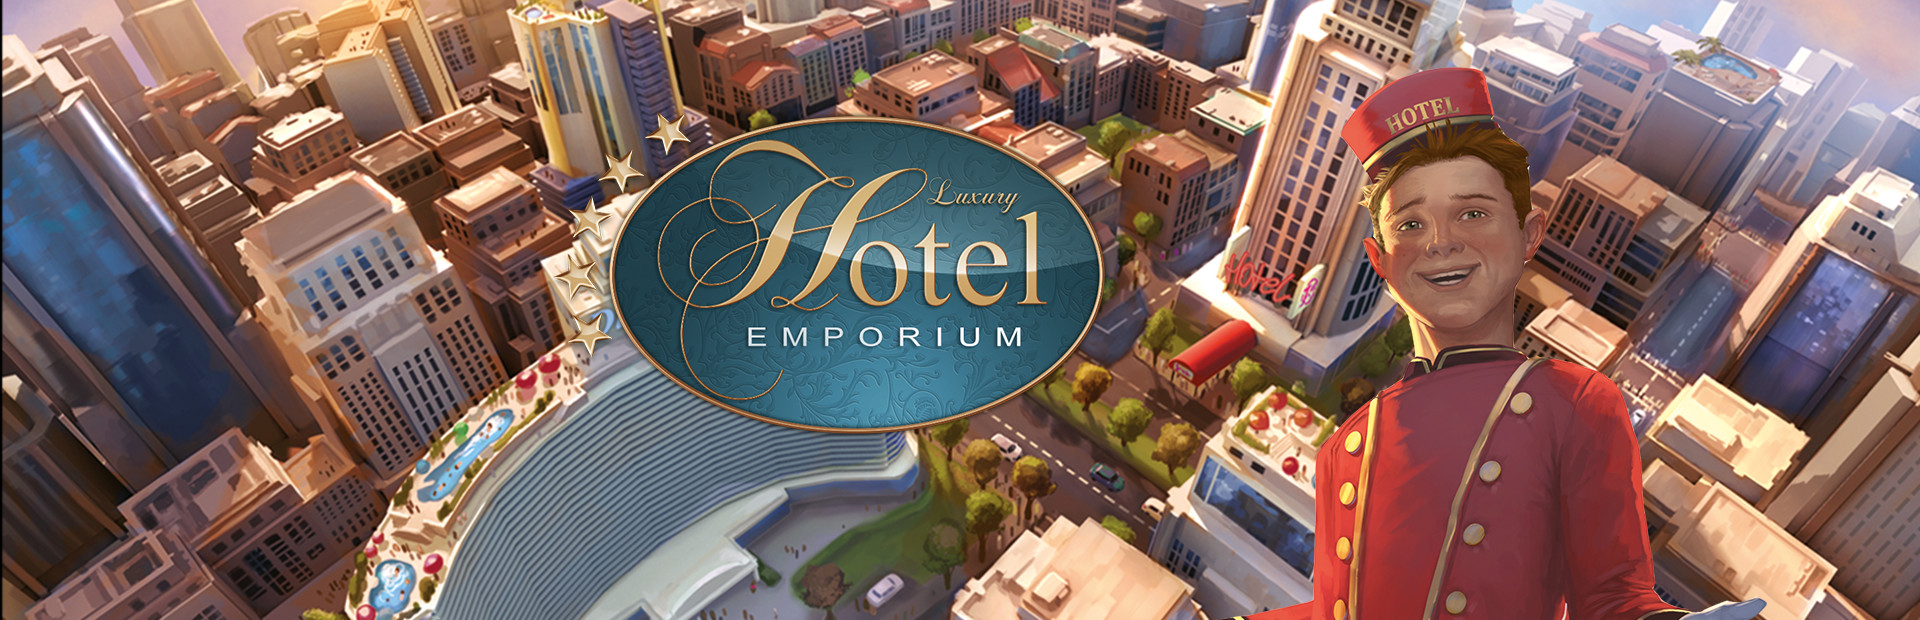 Luxury Hotel Emporium cover image